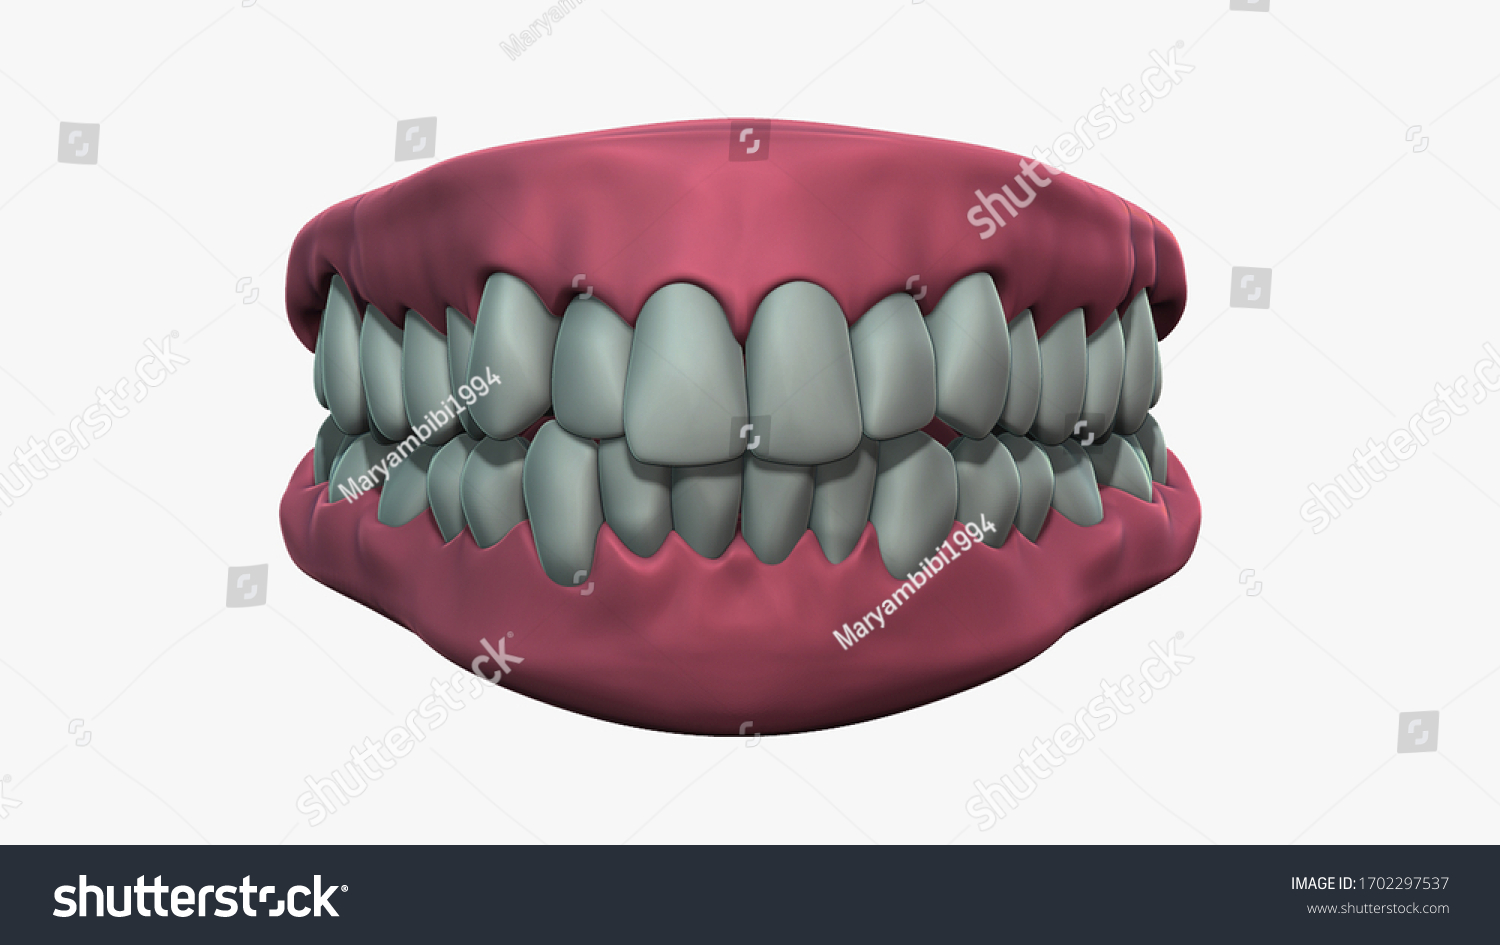 Зд зуб. Макет челюсти. Гипсовая модель зубов. Зуб 3д модель. 3d модель зубов.